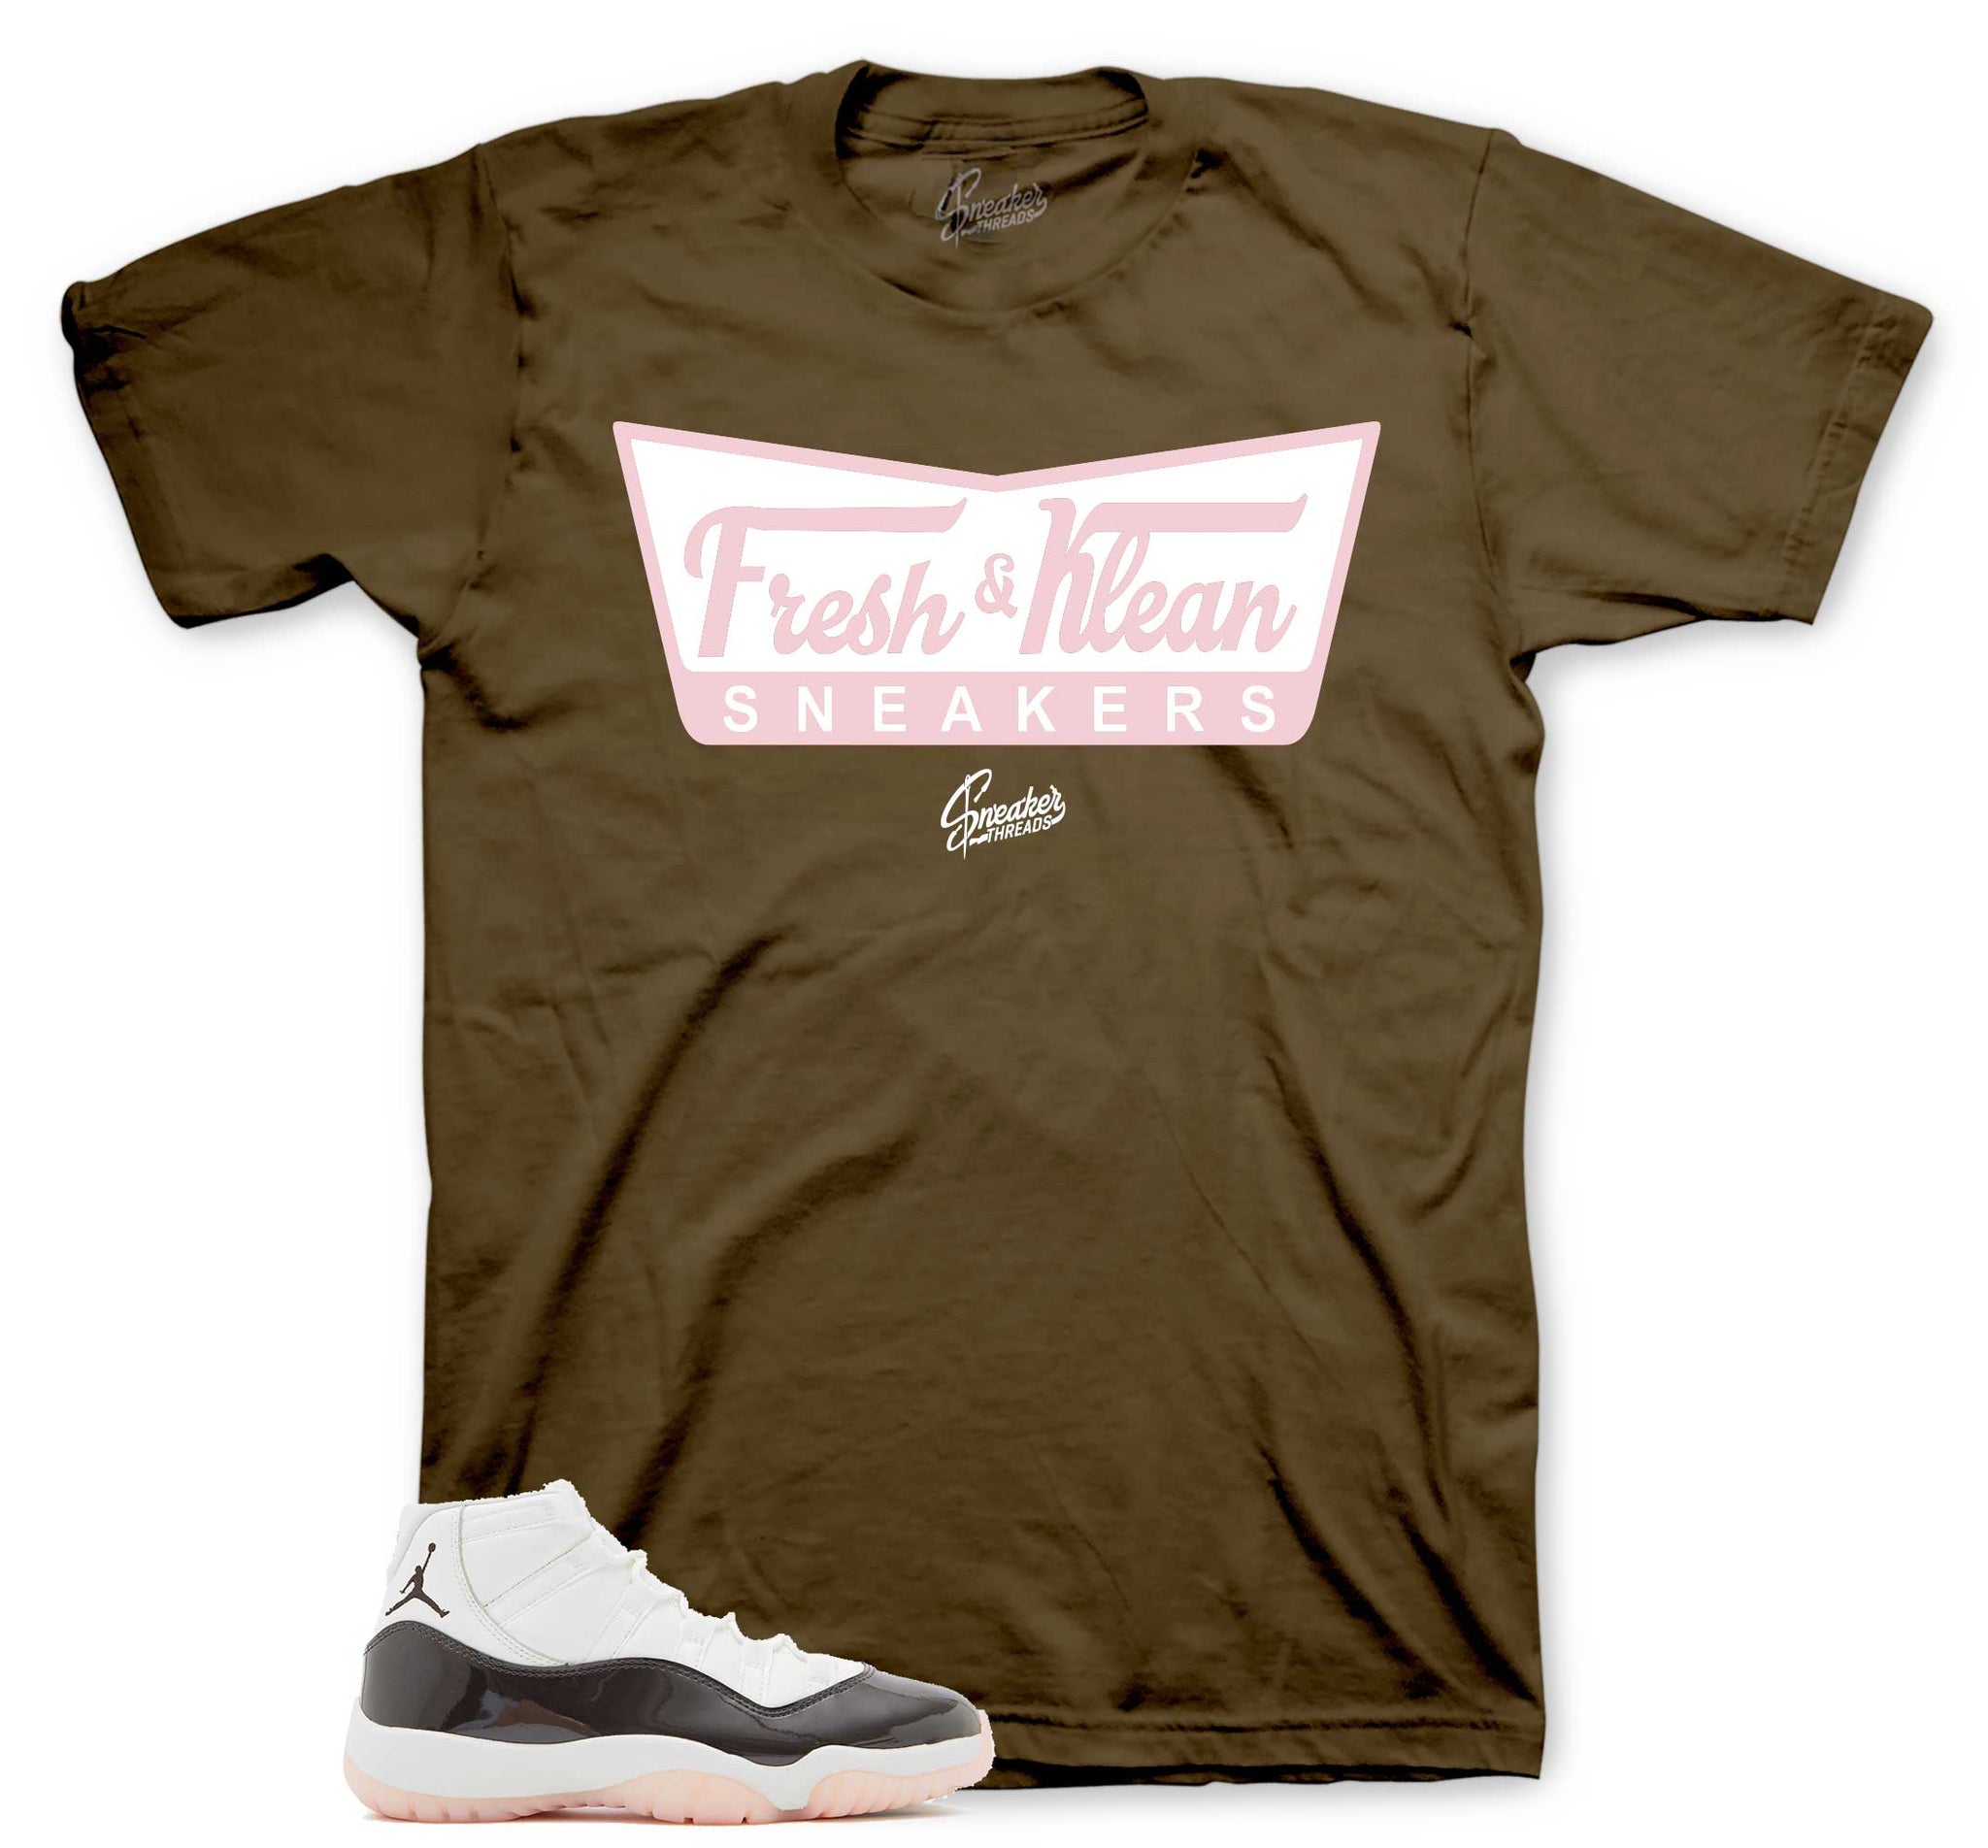 Fresk & Krispy T-Shirt - Retro 11 Neapolitan Shirt